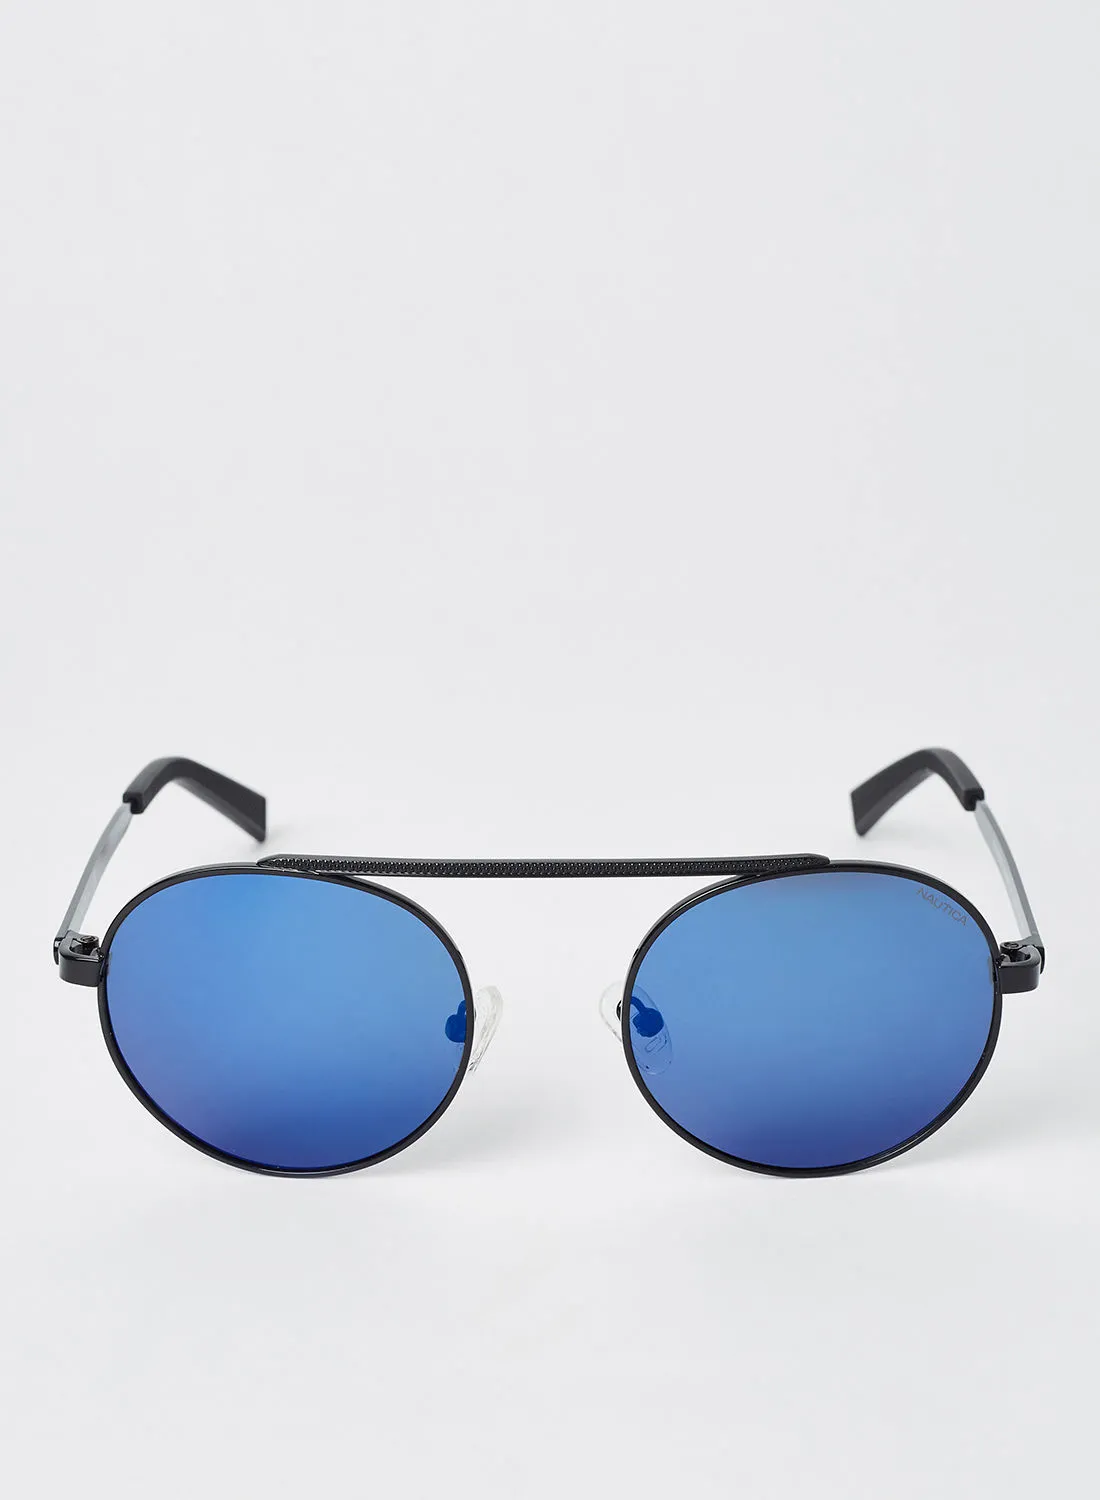 NAUTICA Men's Full Rim Metal Round Sunglasses - Lens Size: 51 mm